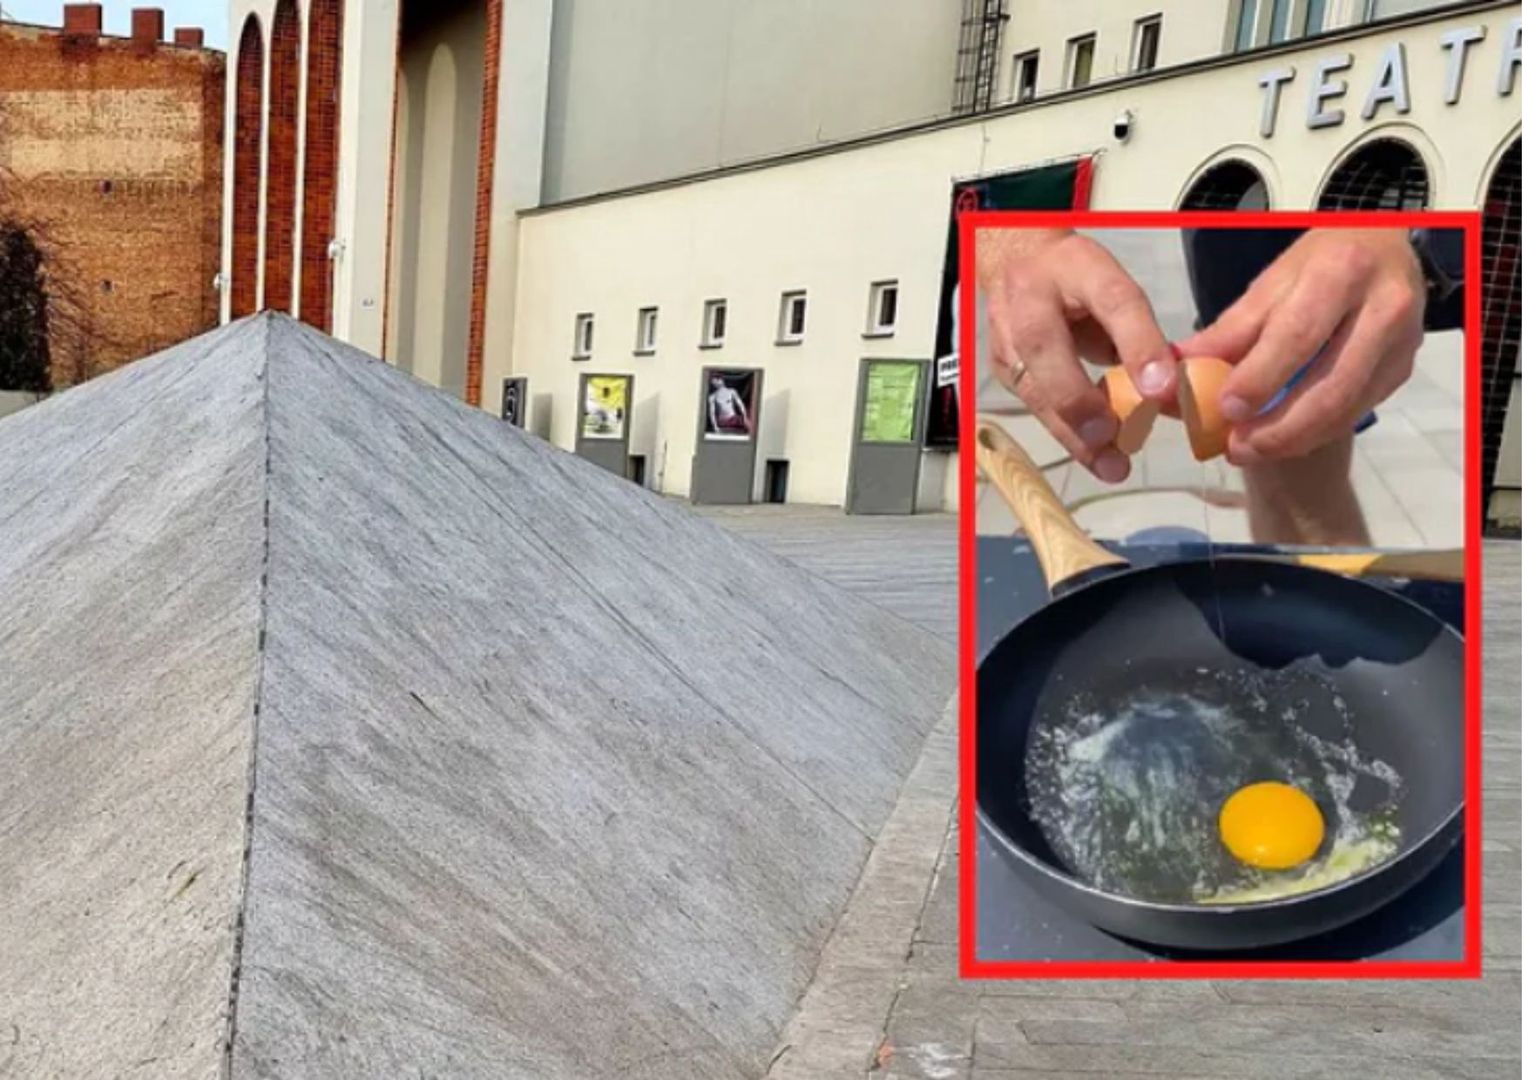 Radny smażył jajka na betonie. Odpowie za to przed sądem?